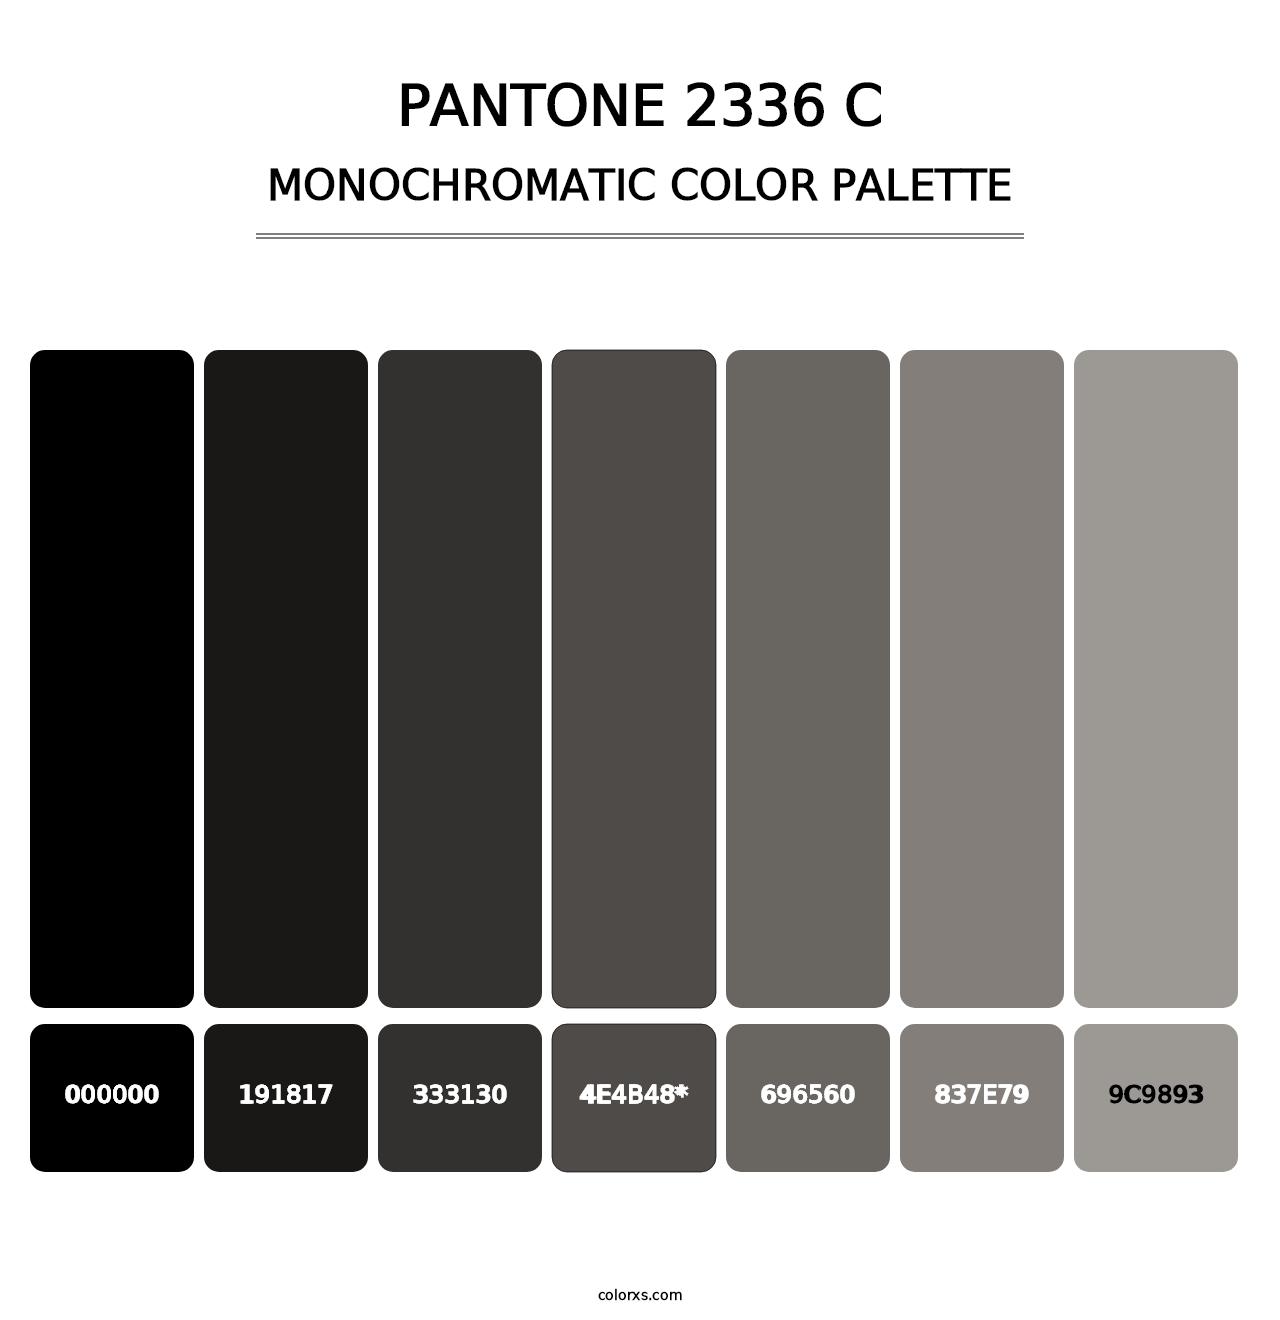 PANTONE 2336 C - Monochromatic Color Palette